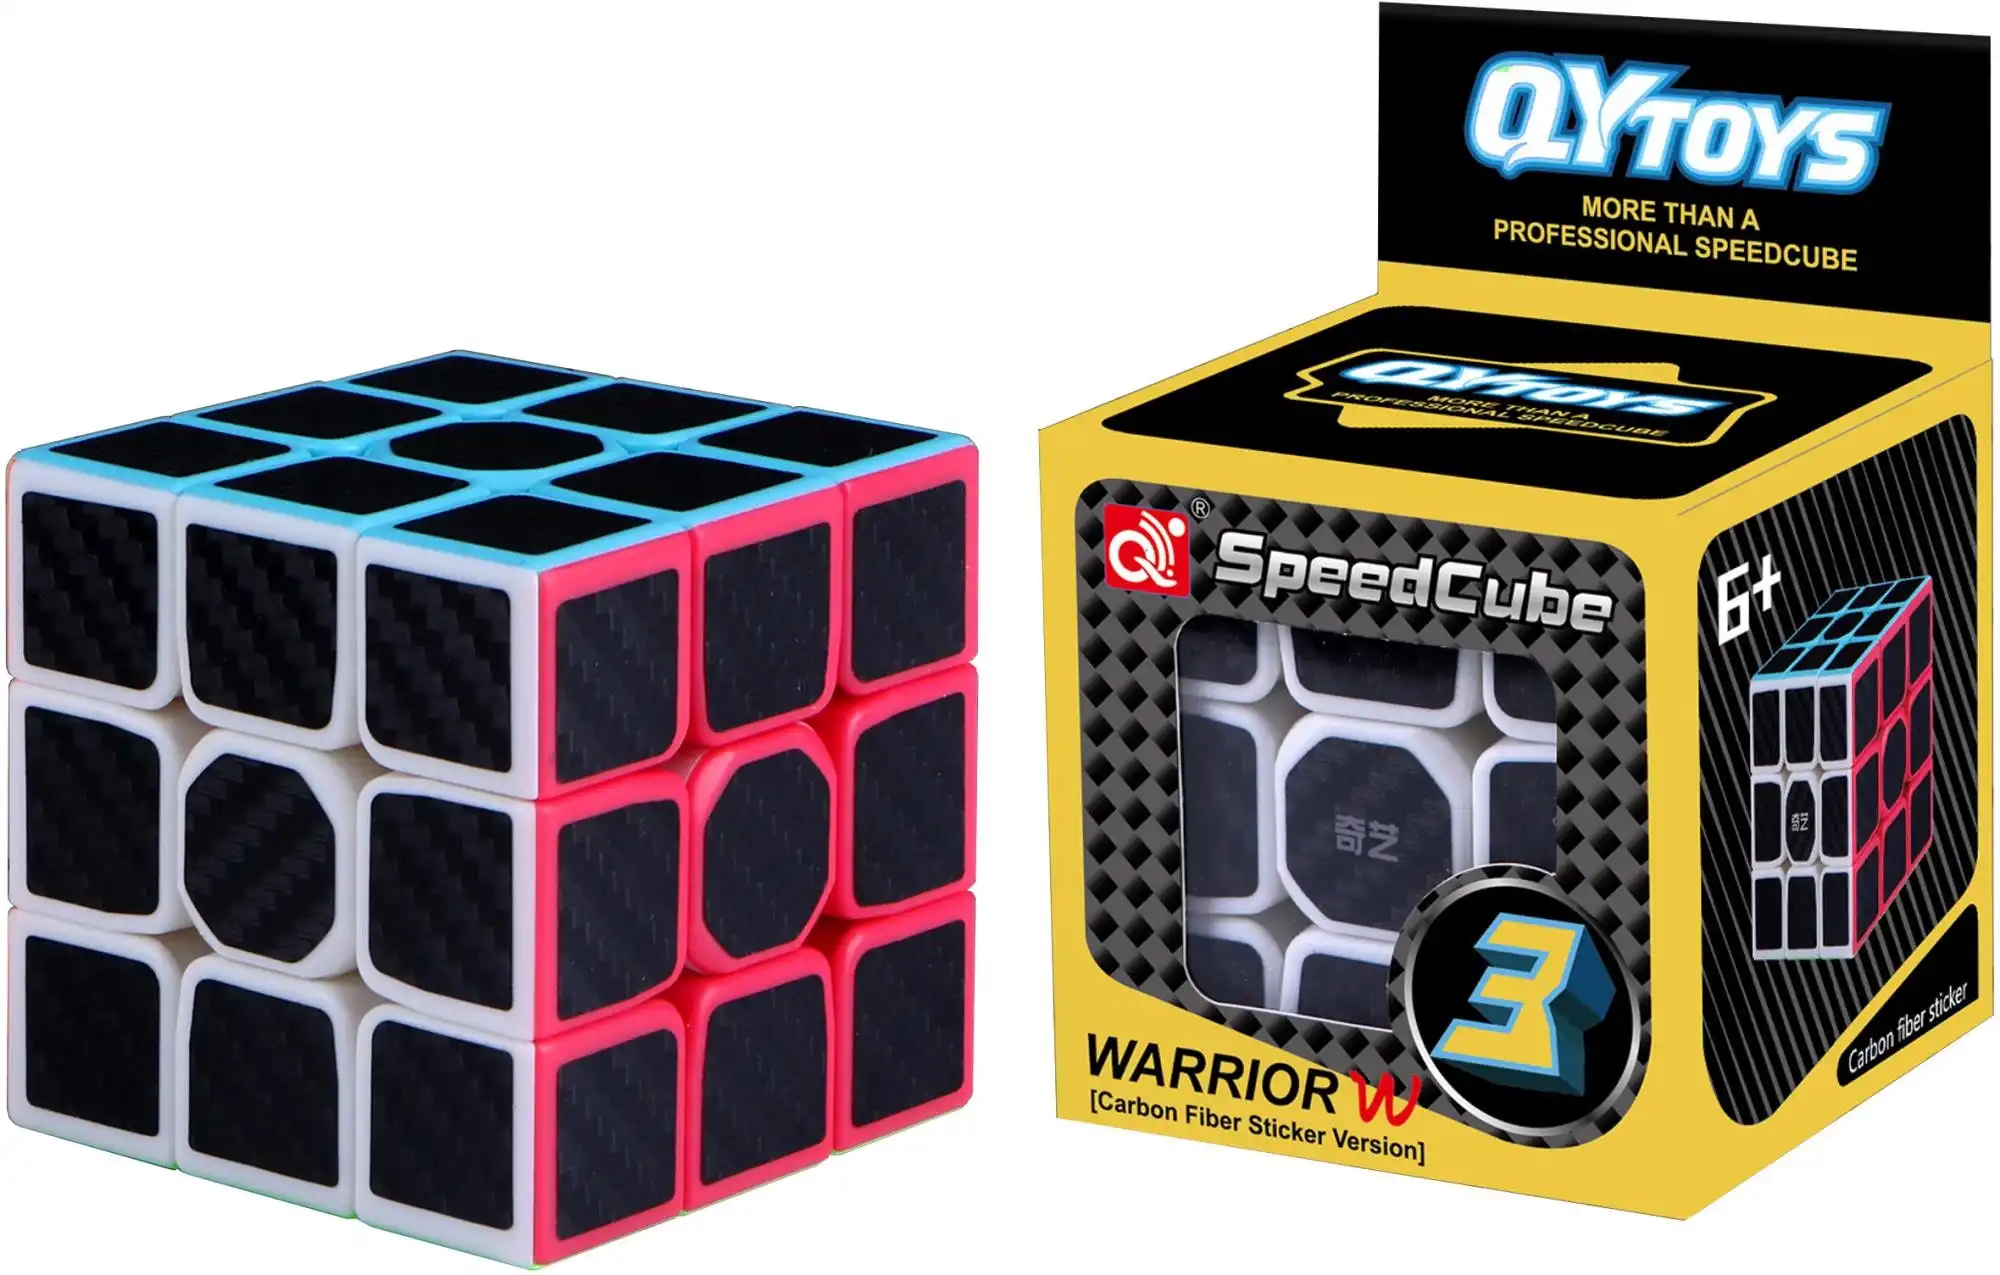 Carbon Fibre Magic Cube Warrior Level 3